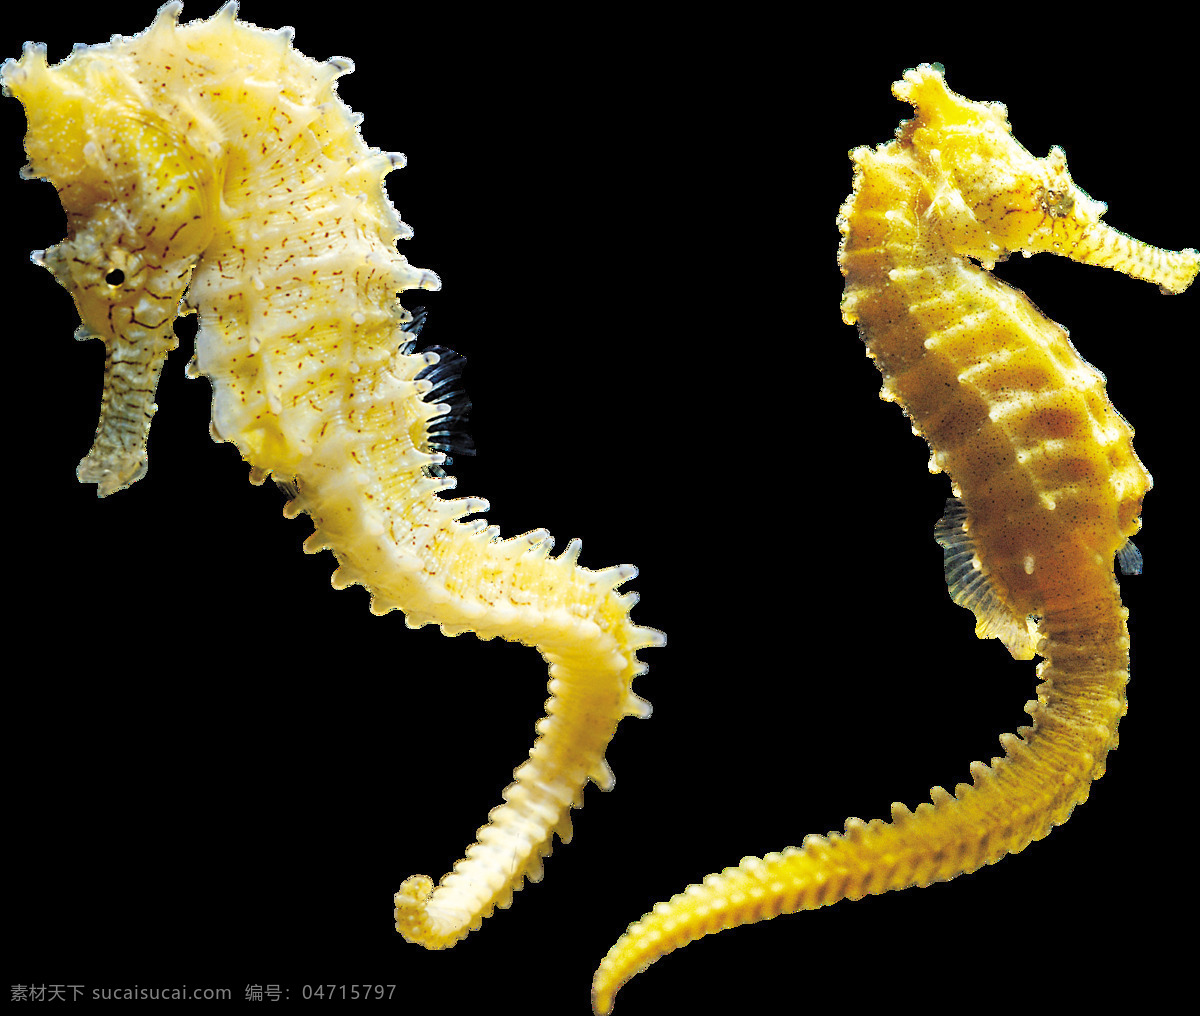 两 只 黄色 海马 免 抠 透明 图 层 海马卡通图片 海马简笔画 小海马图片 黄金海马 大海马 可爱海马图片 海马素材 海马图片素材 手绘海马 海洋动物 海底动物